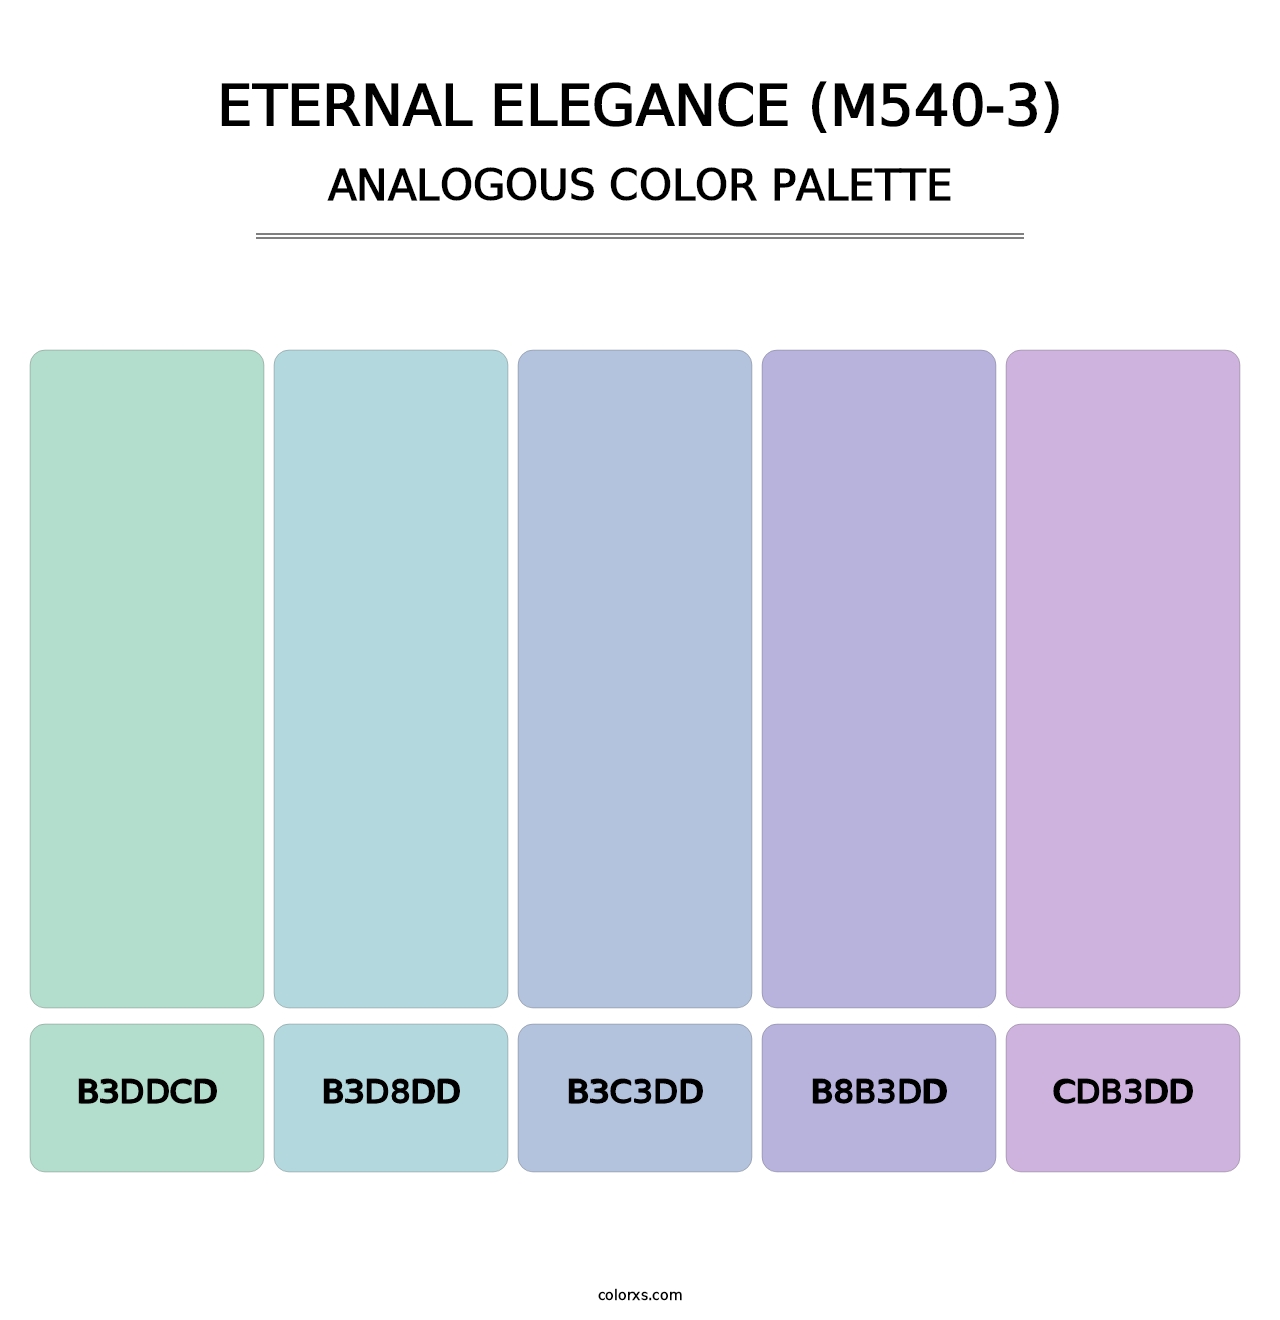 Eternal Elegance (M540-3) - Analogous Color Palette